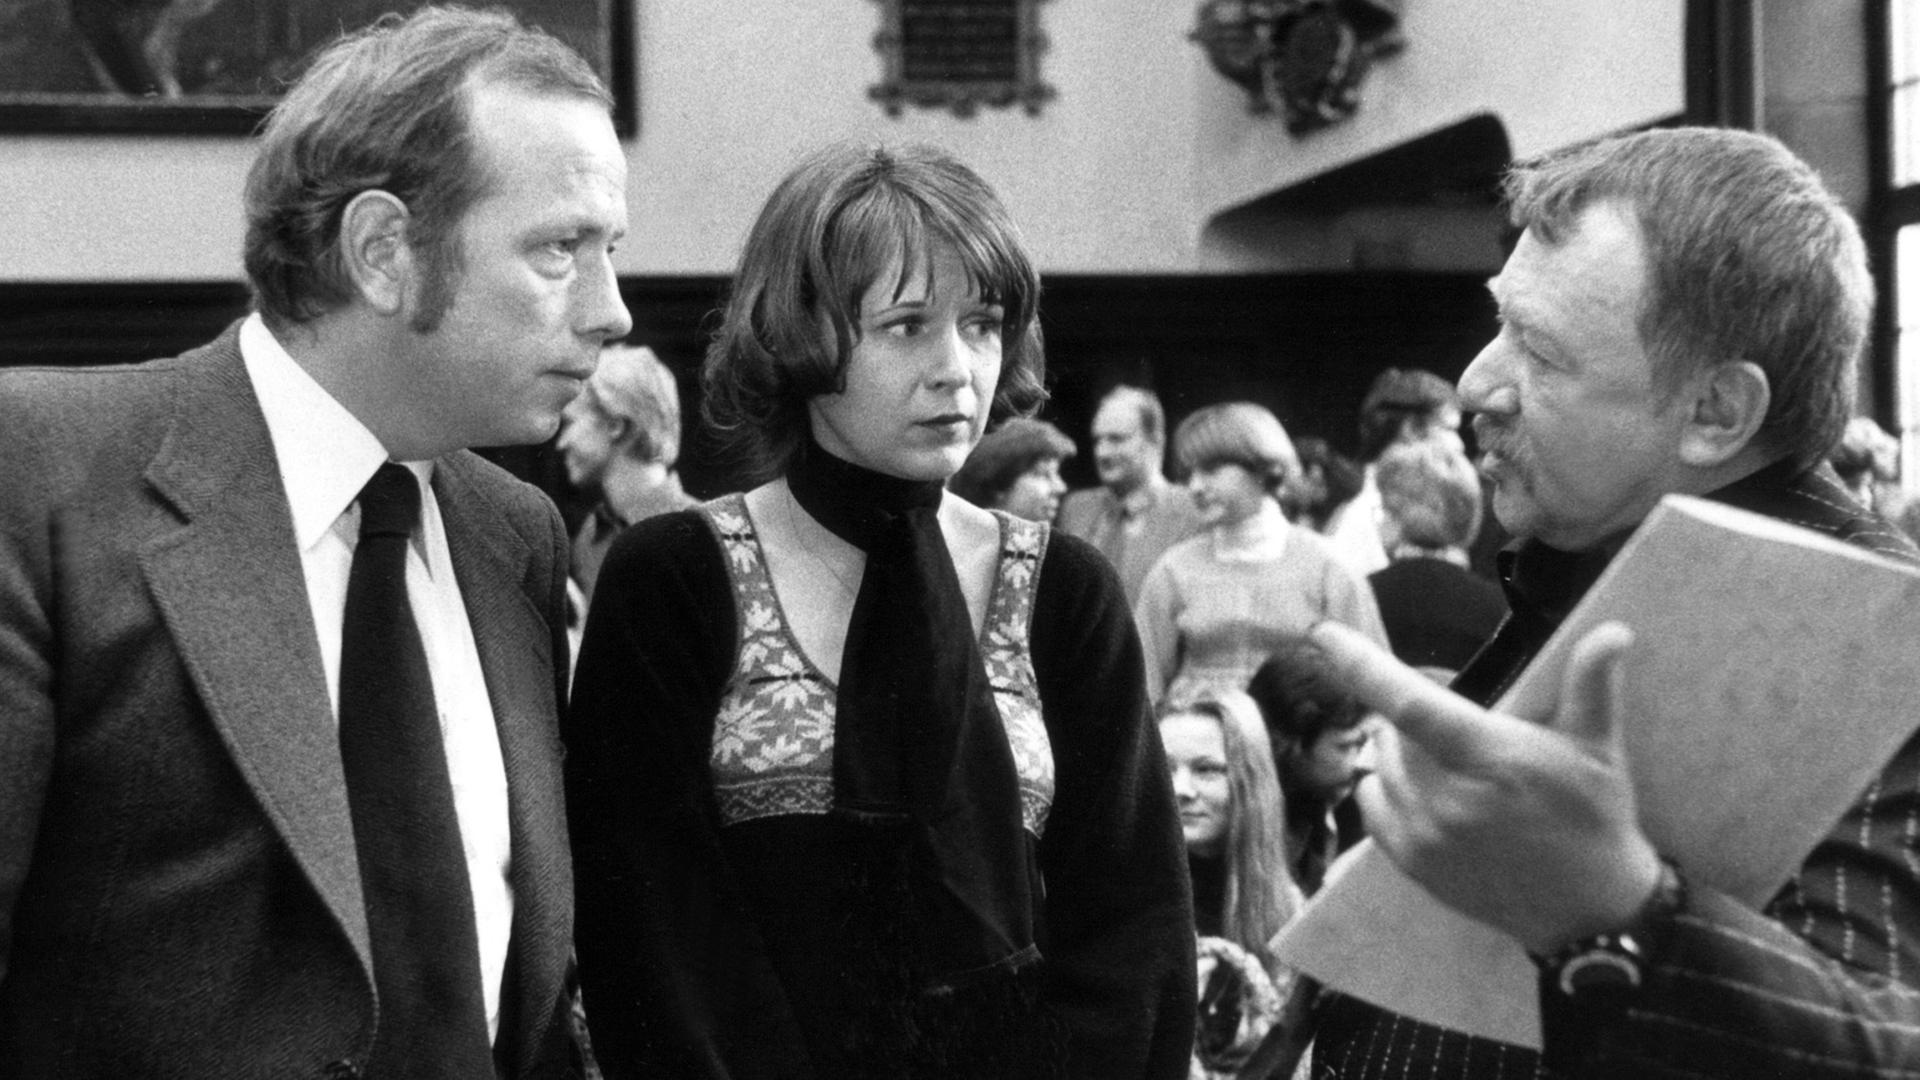 Die Preisträger des Bremer Literaturpreises Nicolas Born (l) und Heinar Kipphardt (r) nach der Preisverleihung im Bremer Rathaus am 26. Januar 1977 im Gespräch mit der Lyrikerin Karin Kiwus, die mit dem Literaturförderpreis ausgezeichnet wurde.